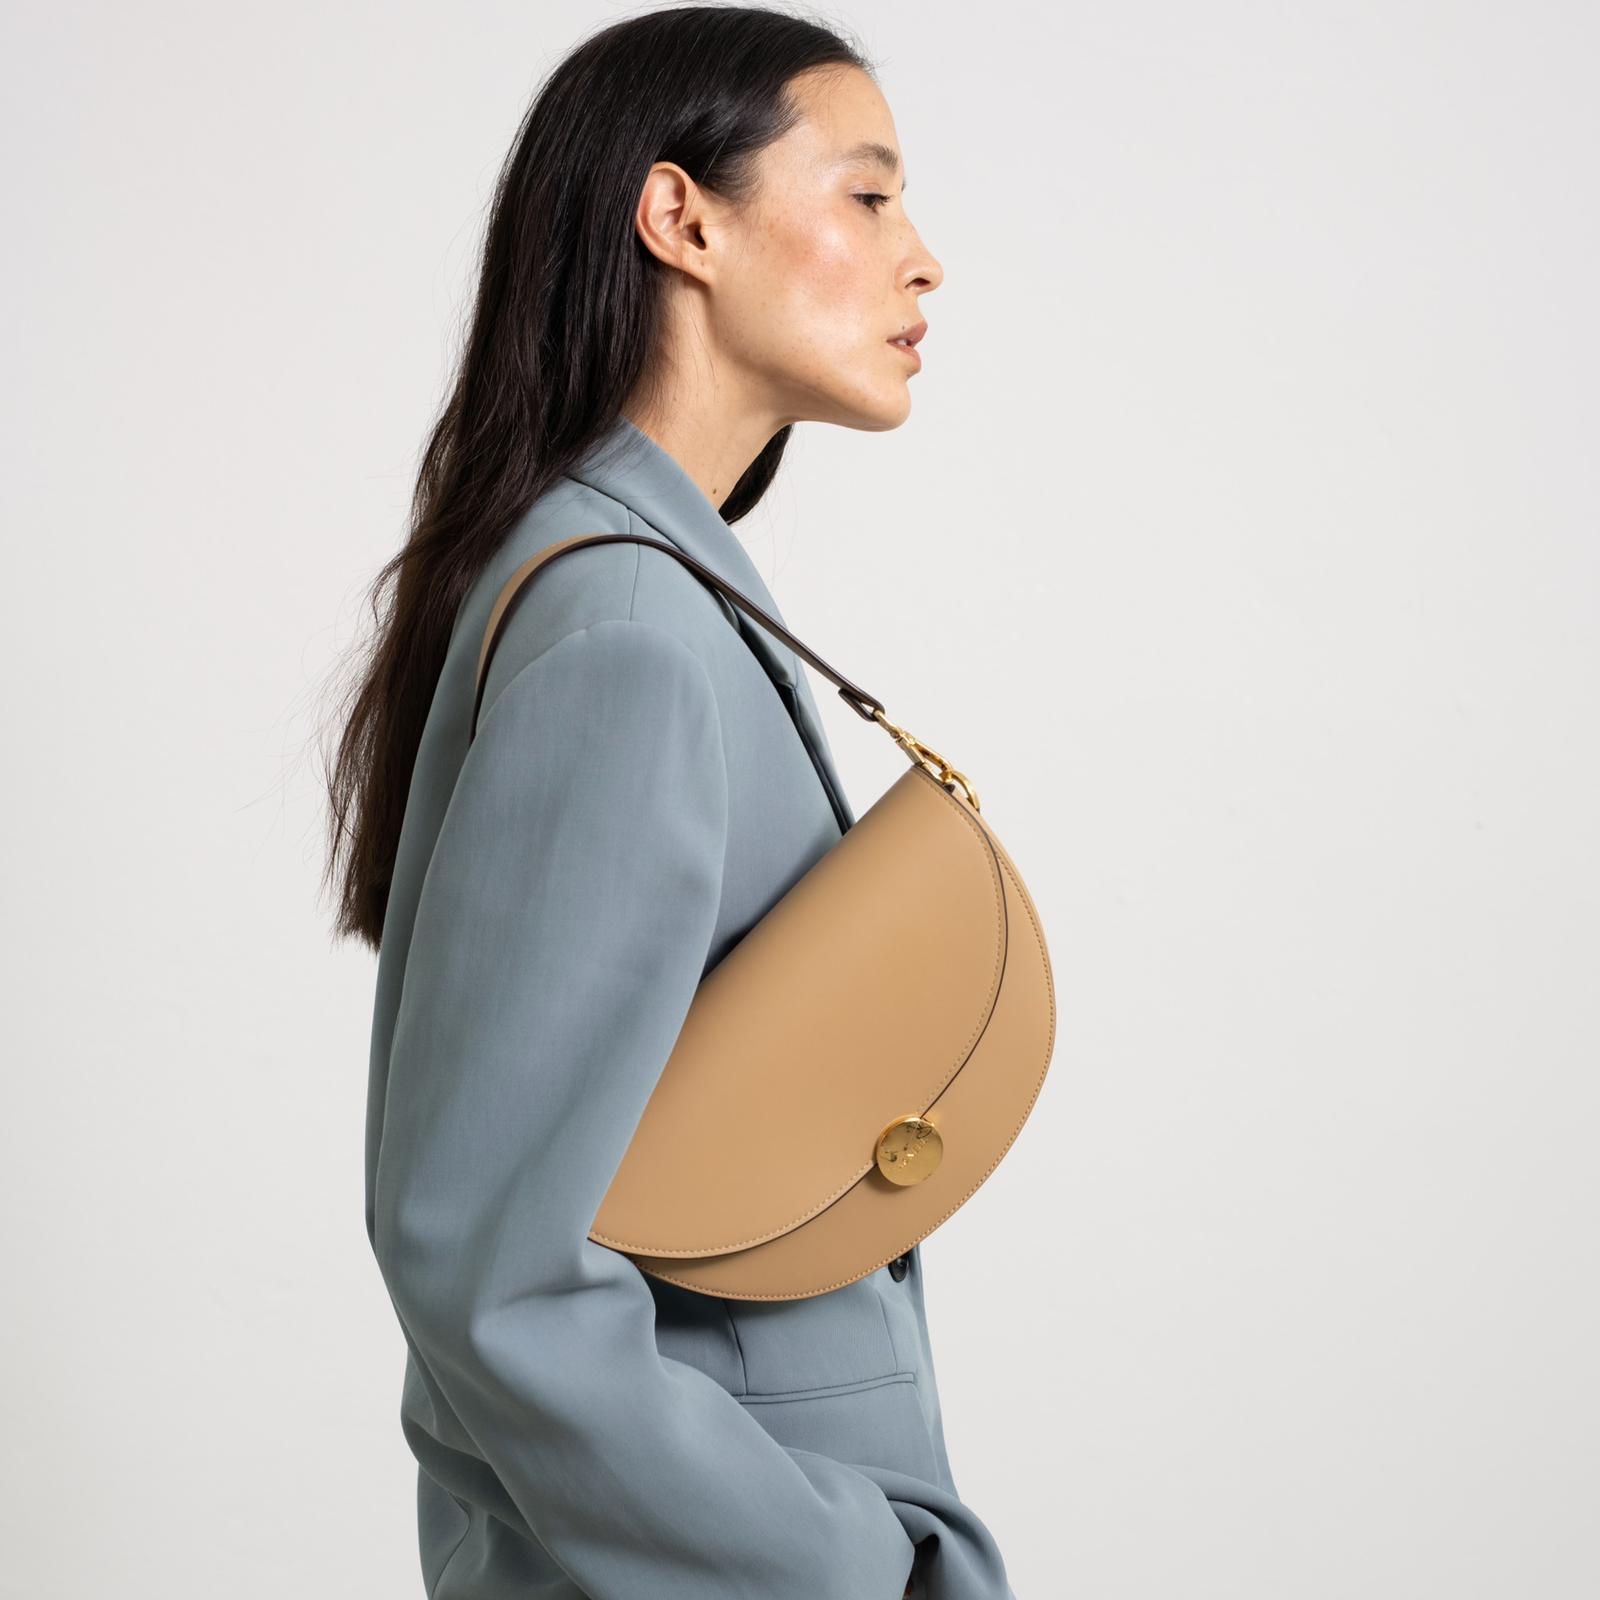 AGNEEL | Luxuriöse Handtaschen designt in Berlin, nachhaltig gefertigt ...